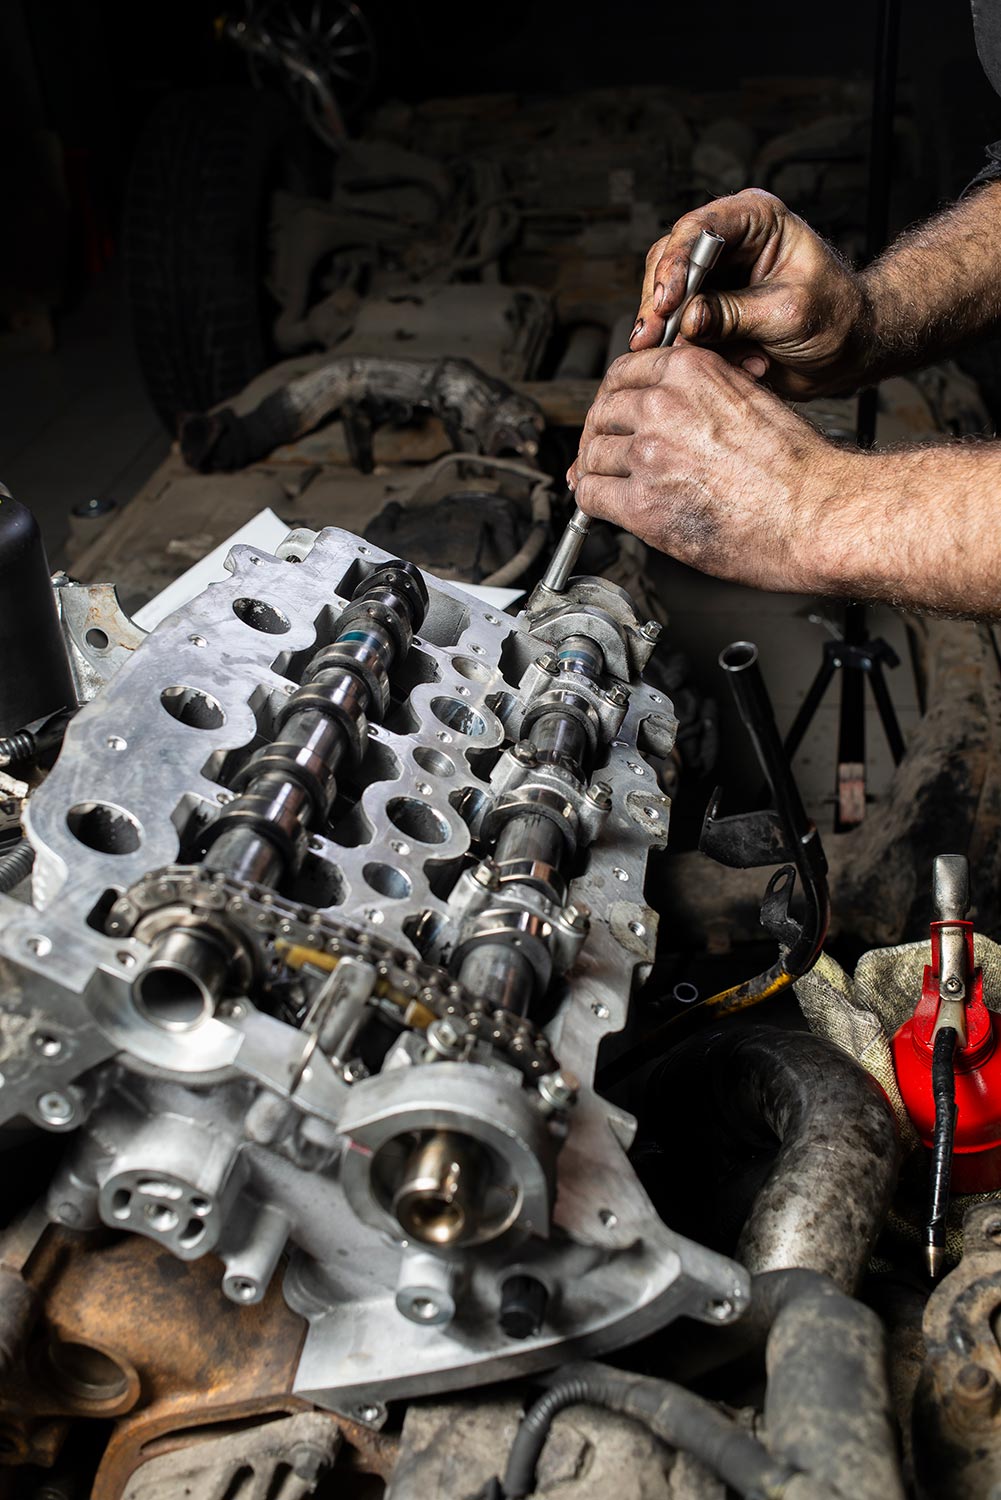 Repairing V6 engine in auto repair shop